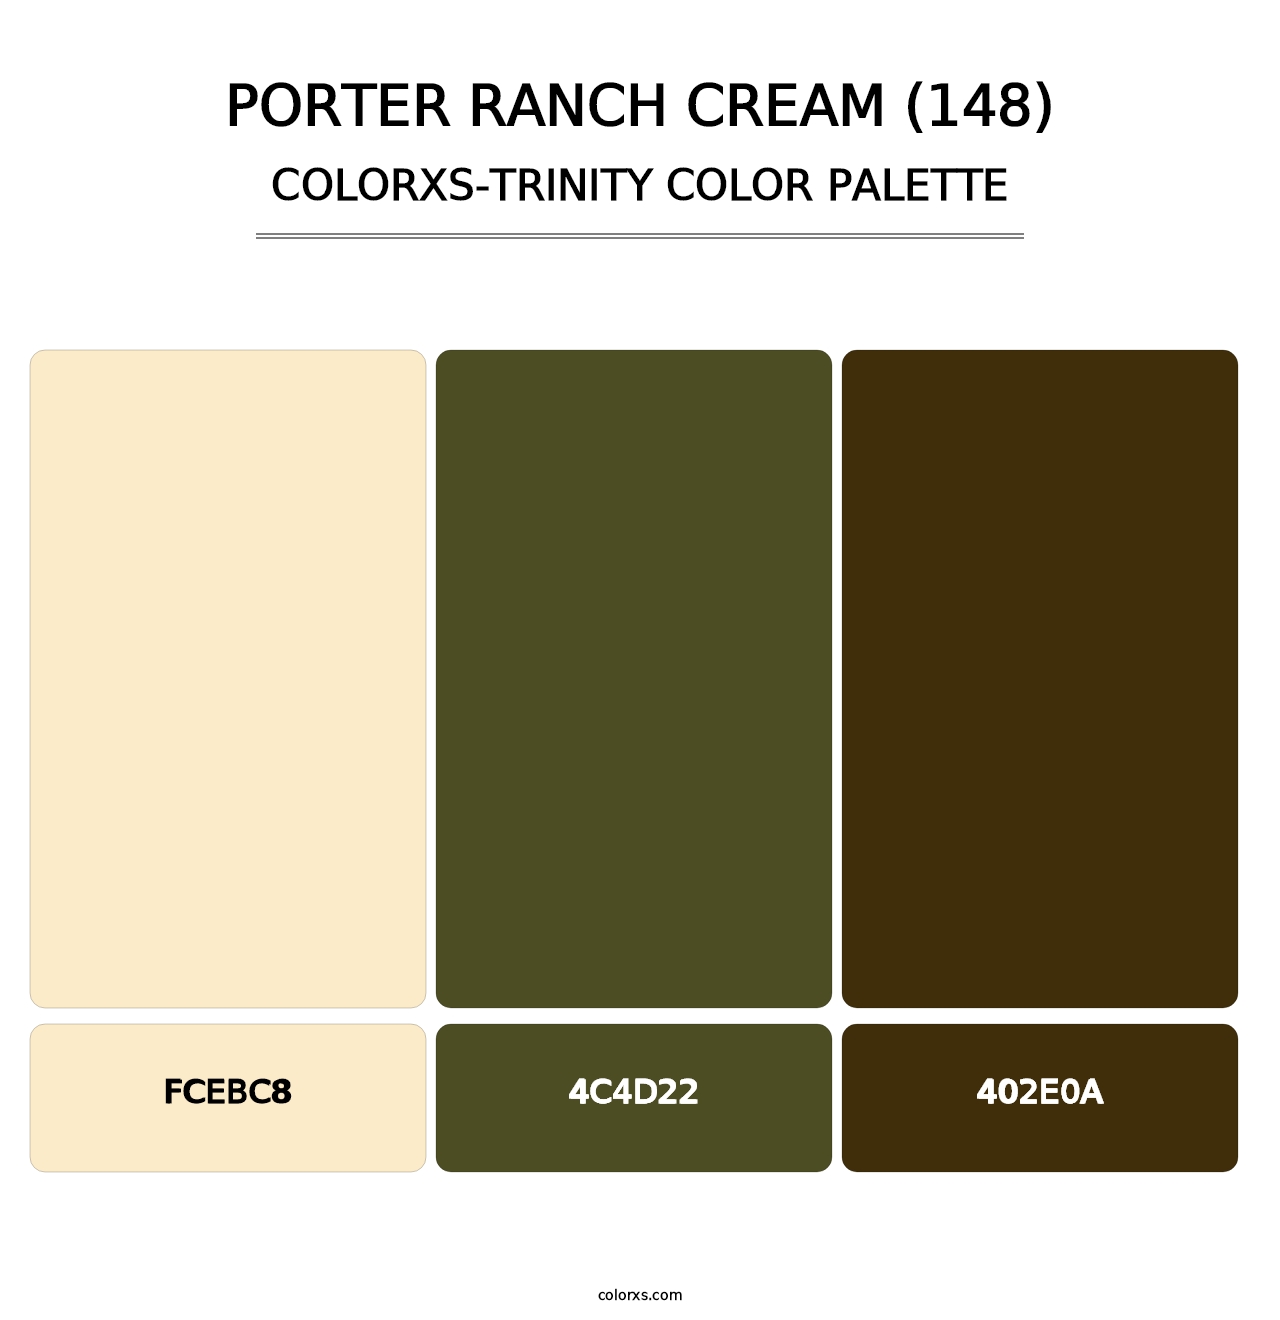 Porter Ranch Cream (148) - Colorxs Trinity Palette